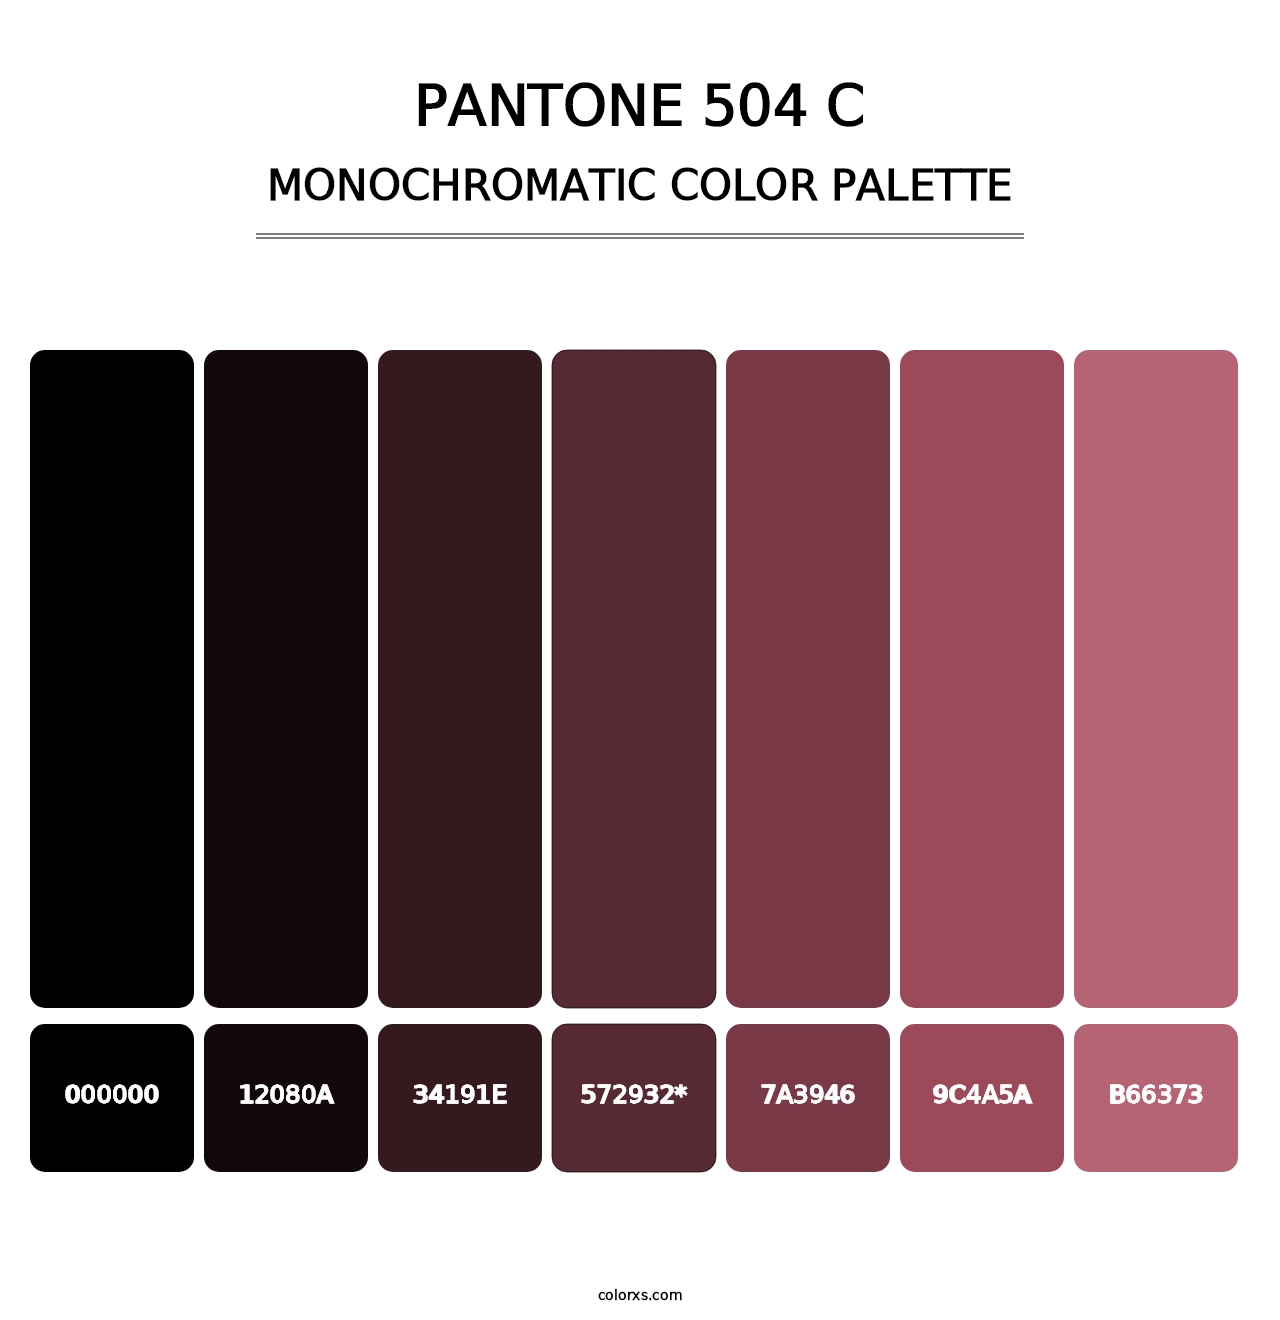 PANTONE 504 C - Monochromatic Color Palette